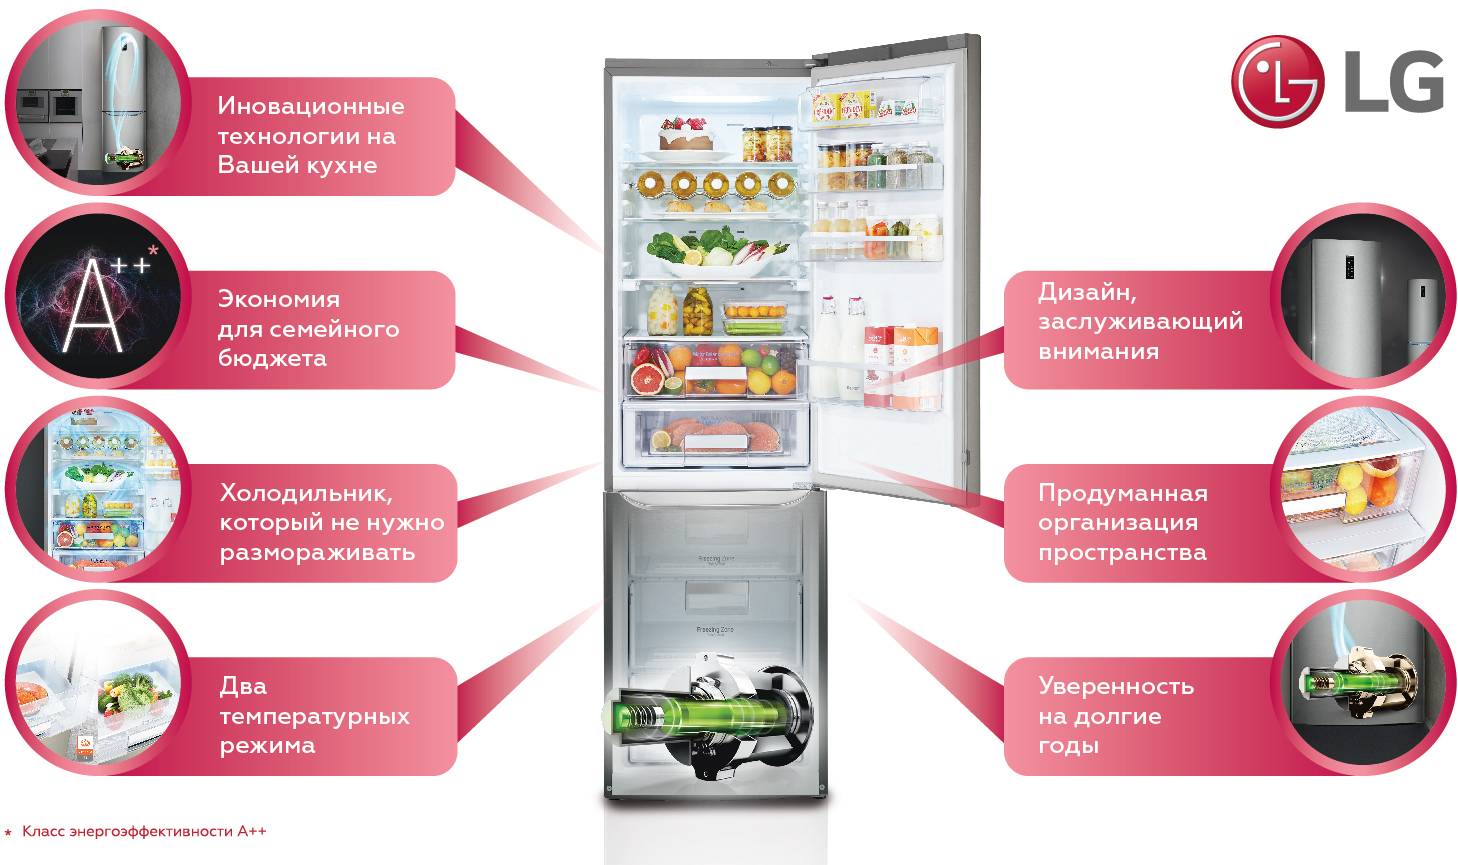 Что такое инверторный компрессор в холодильнике